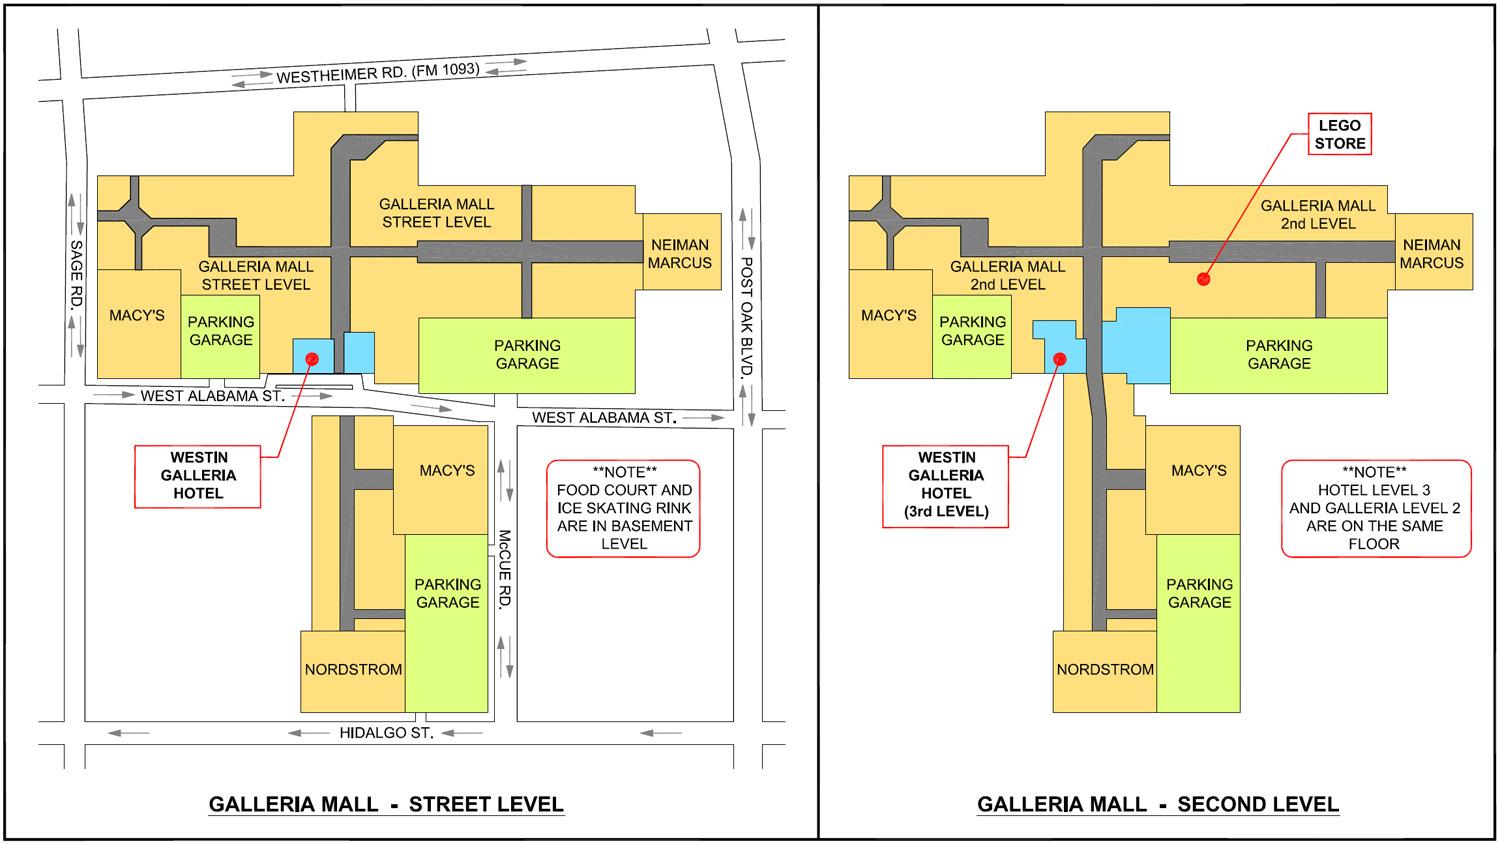 Center Map of The Galleria - A Shopping Center In Houston, TX - A Simon  Property